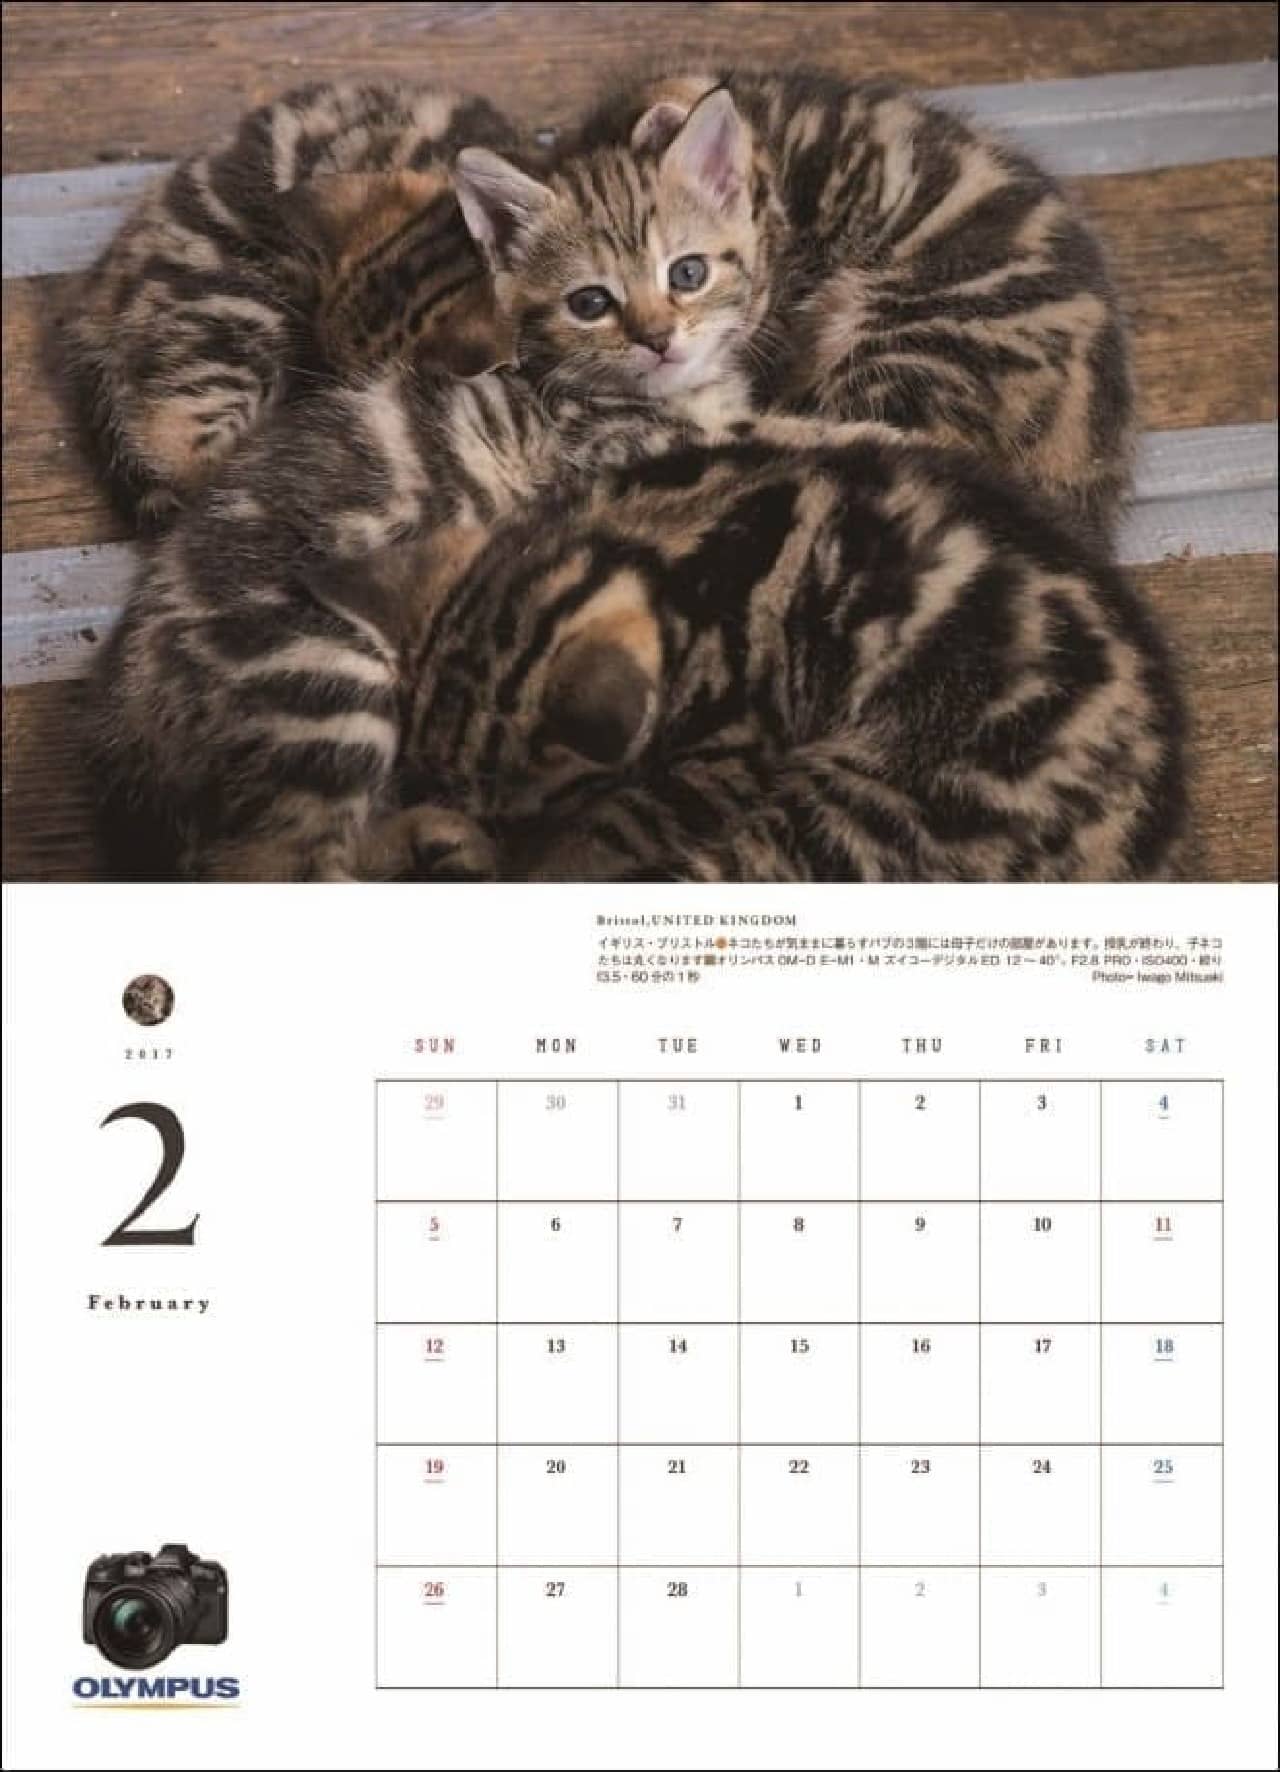 岩合光昭さん撮影の猫カレンダー「猫にまた旅2017」